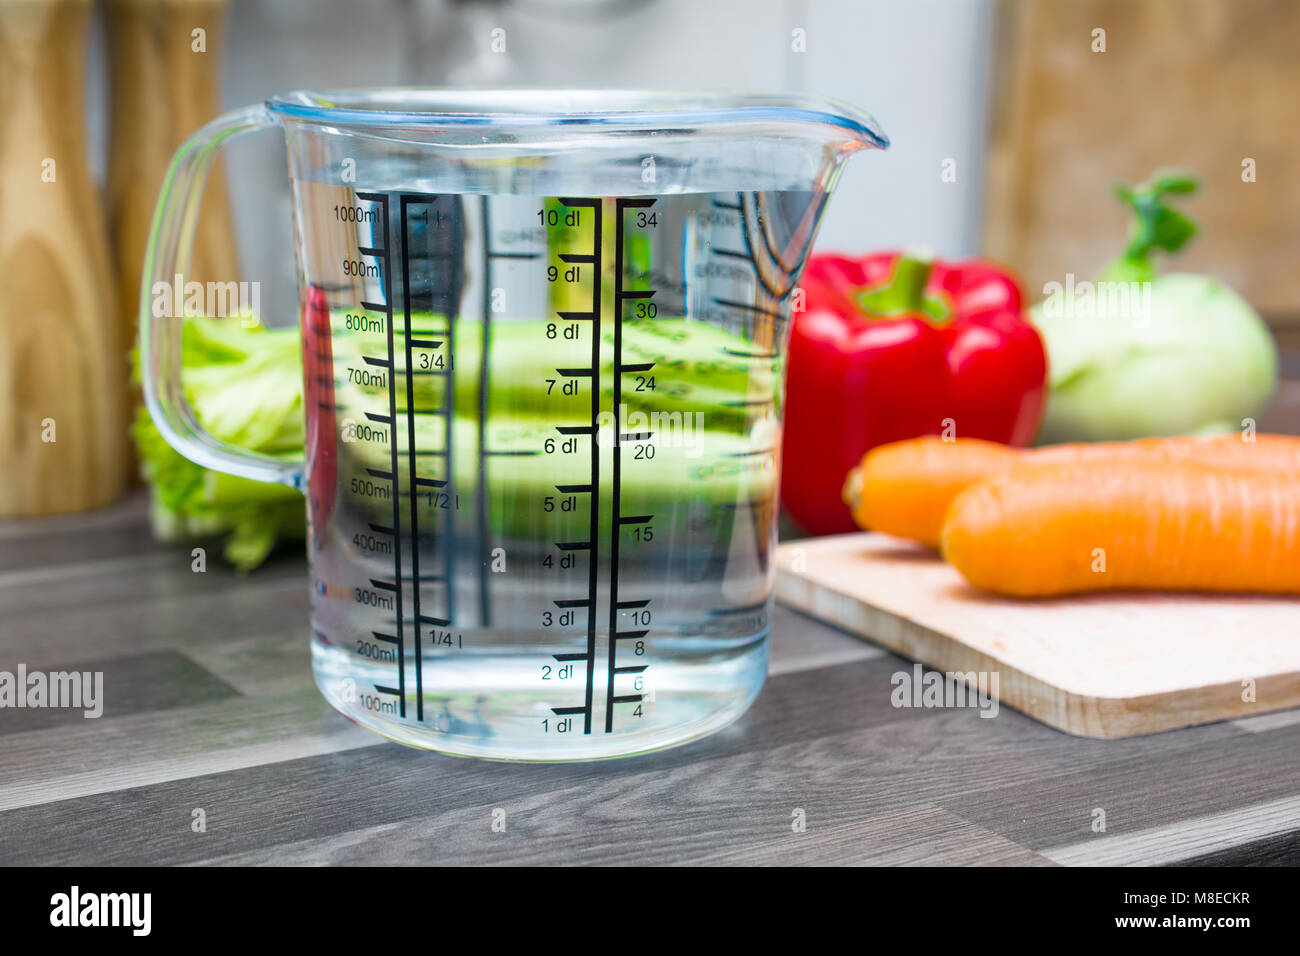 1 litro / 1000ml / 10dl di acqua in una coppa di misurazione su un bancone cucina con verdure Foto Stock